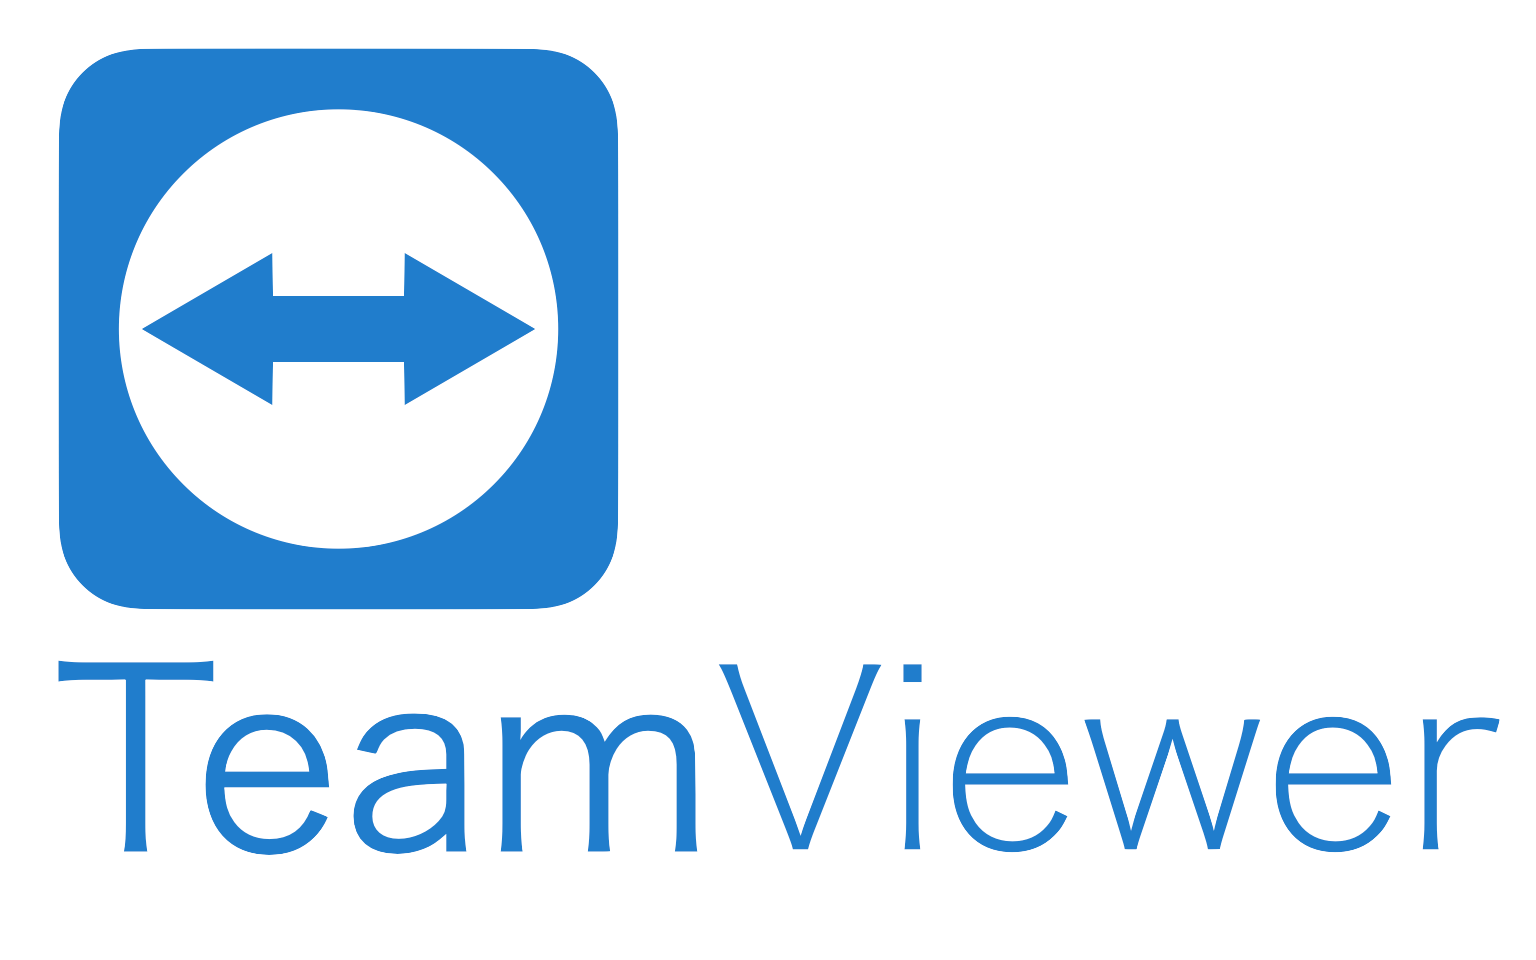 teamviewer 12.0.259 download